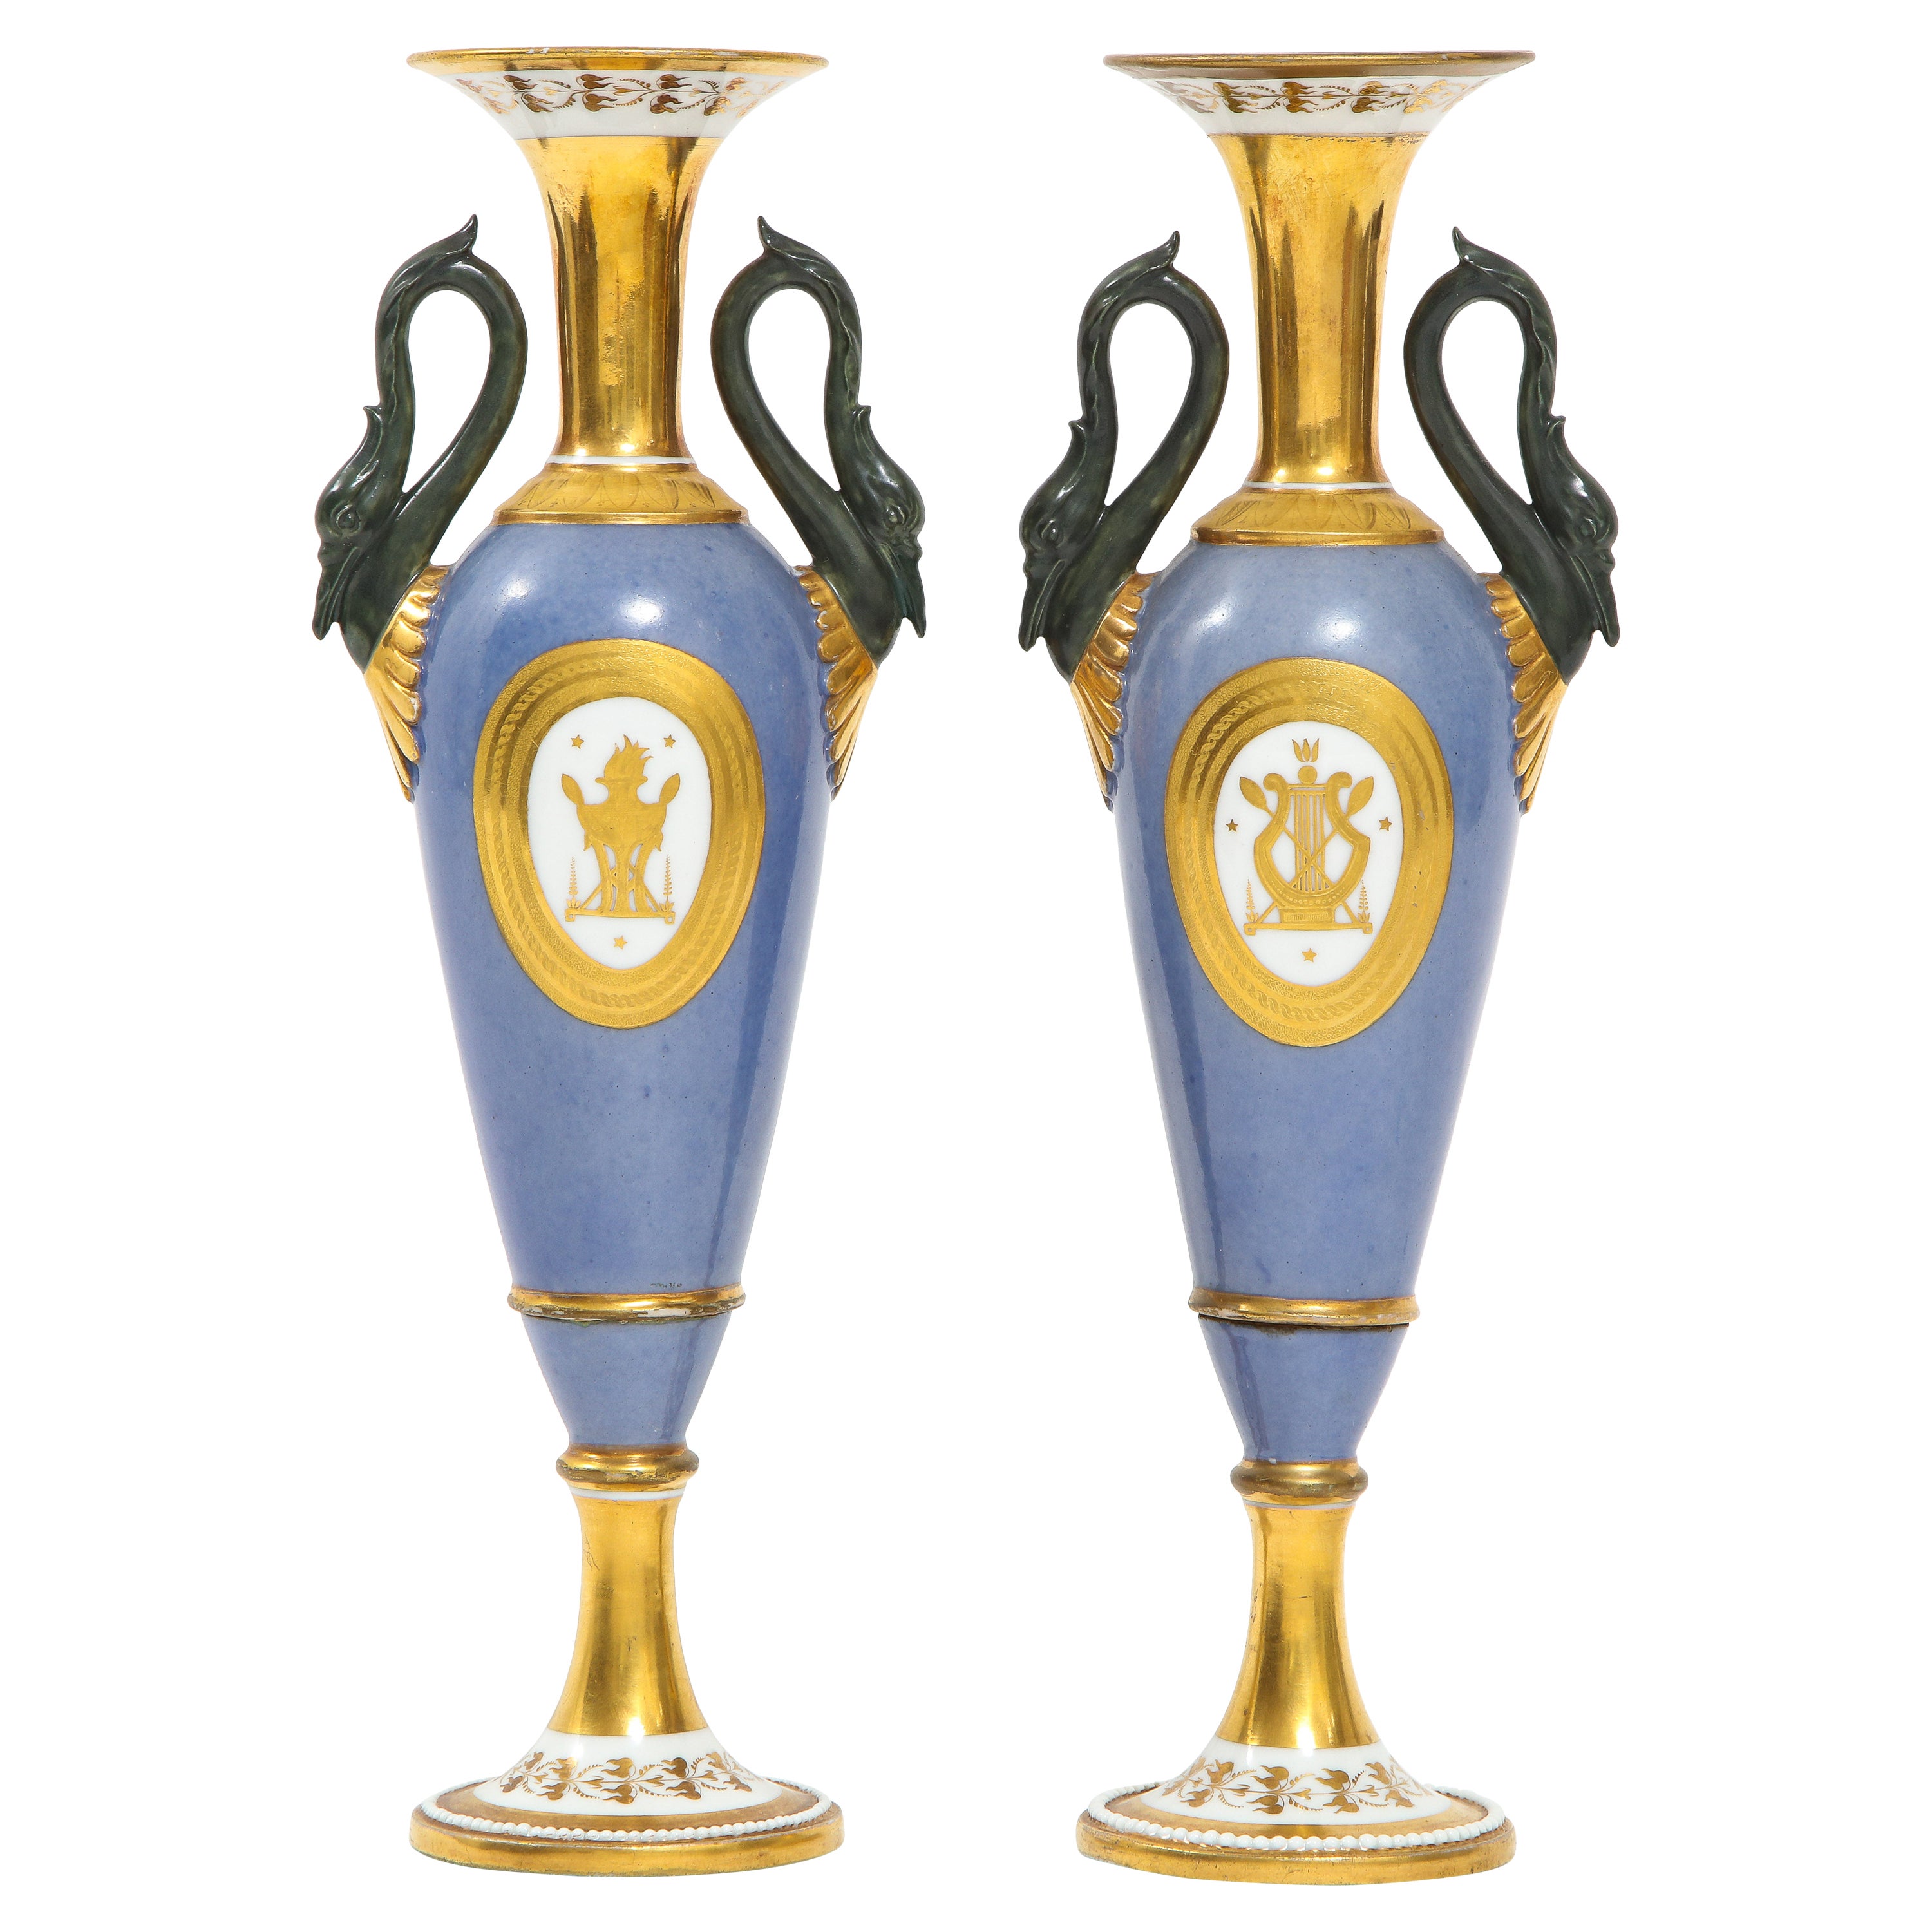 Paire de vases à poignée en forme de cygne en porcelaine de Paris ancienne du 19ème siècle, marqués